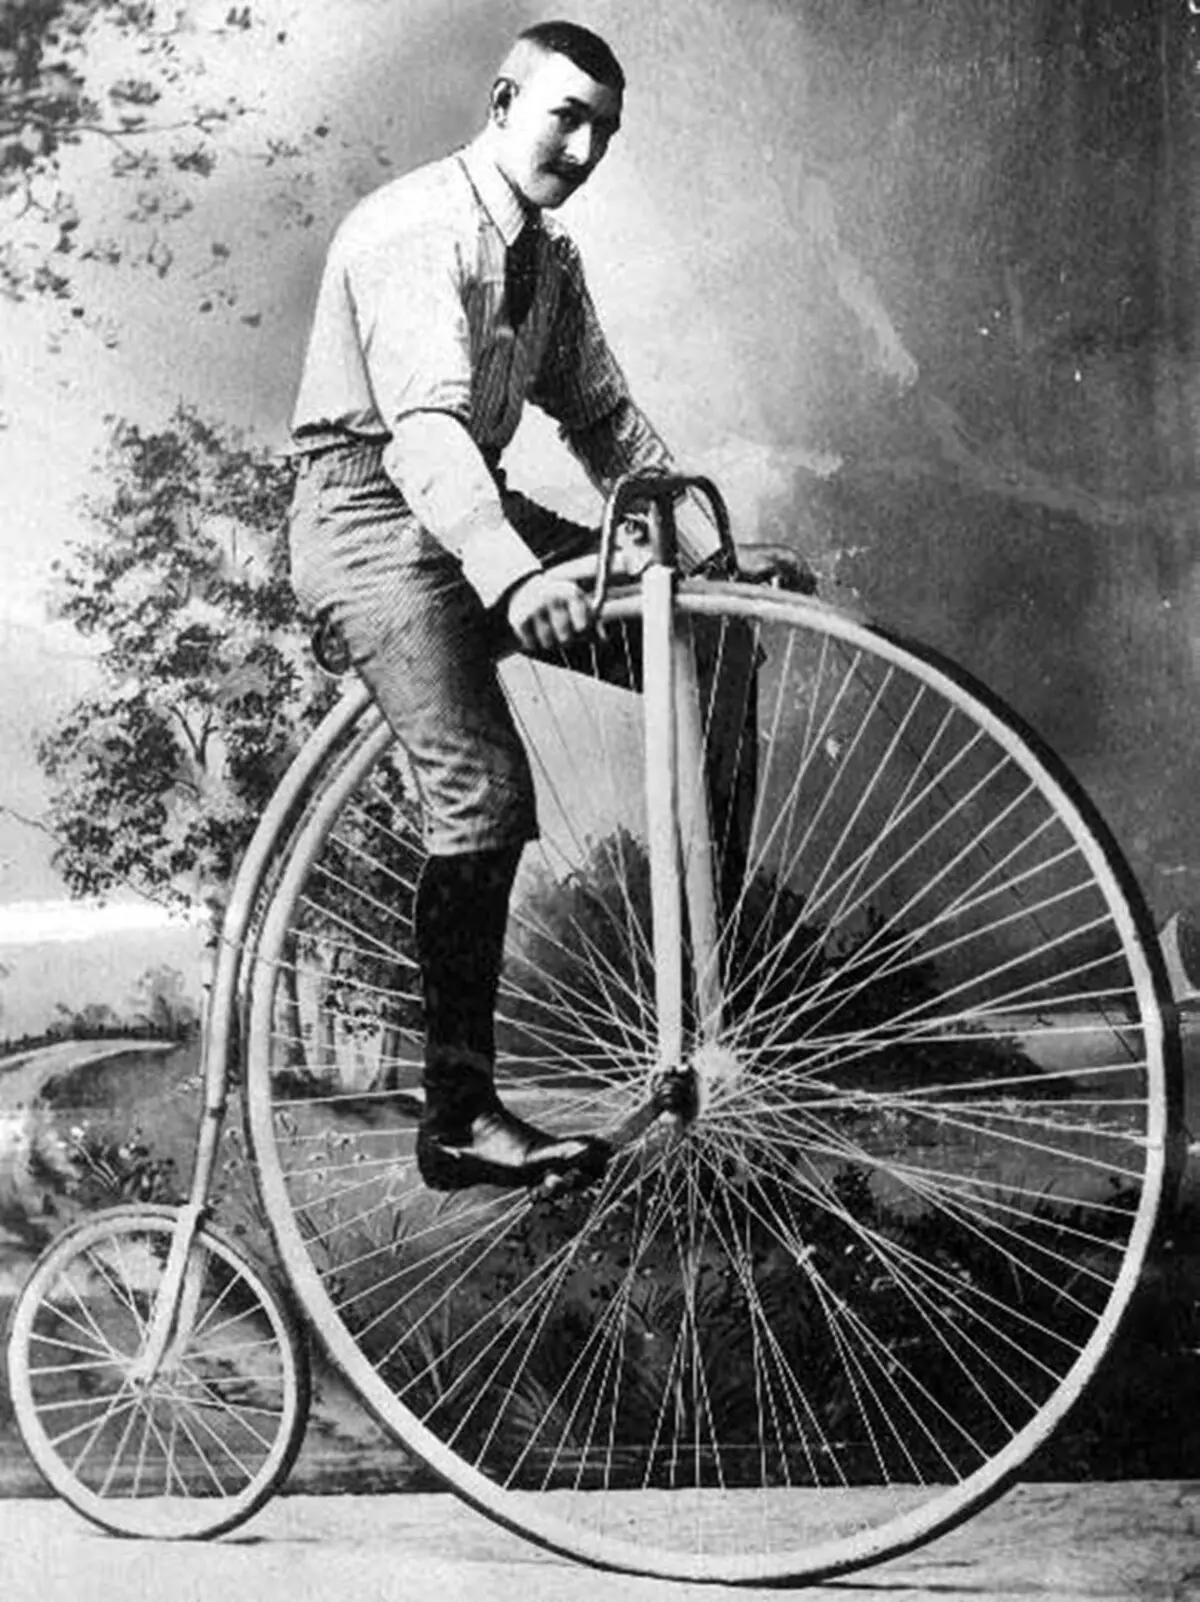 Monocycle: Kāds ir vienriteņa nosaukums (viens velosipēds)? Pārskats par elektriskajiem modeļiem. Kā iemācīties braukt? 26188_6